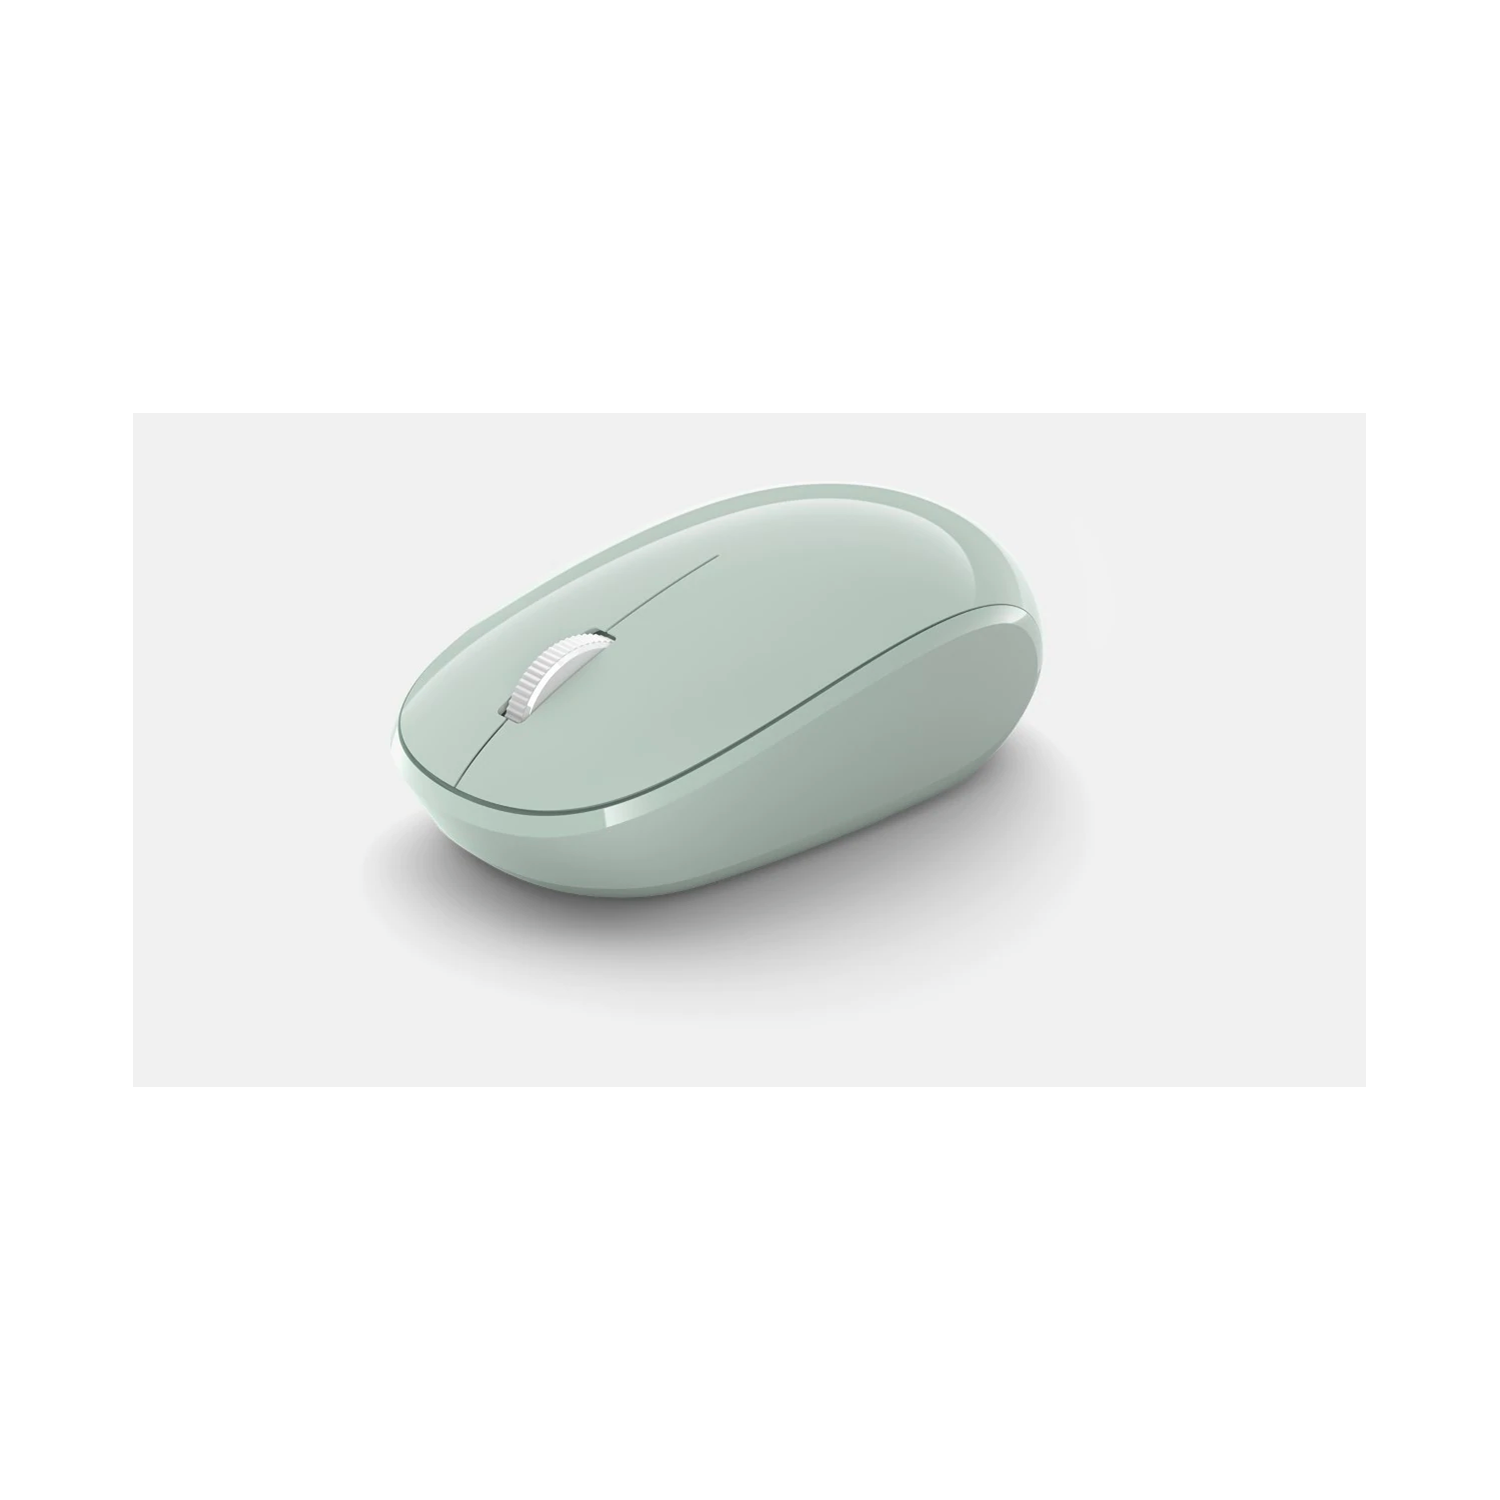 Chuột không dây Microsoft Bluetooth Mouse RJN-00029 có thiết kế thông minh